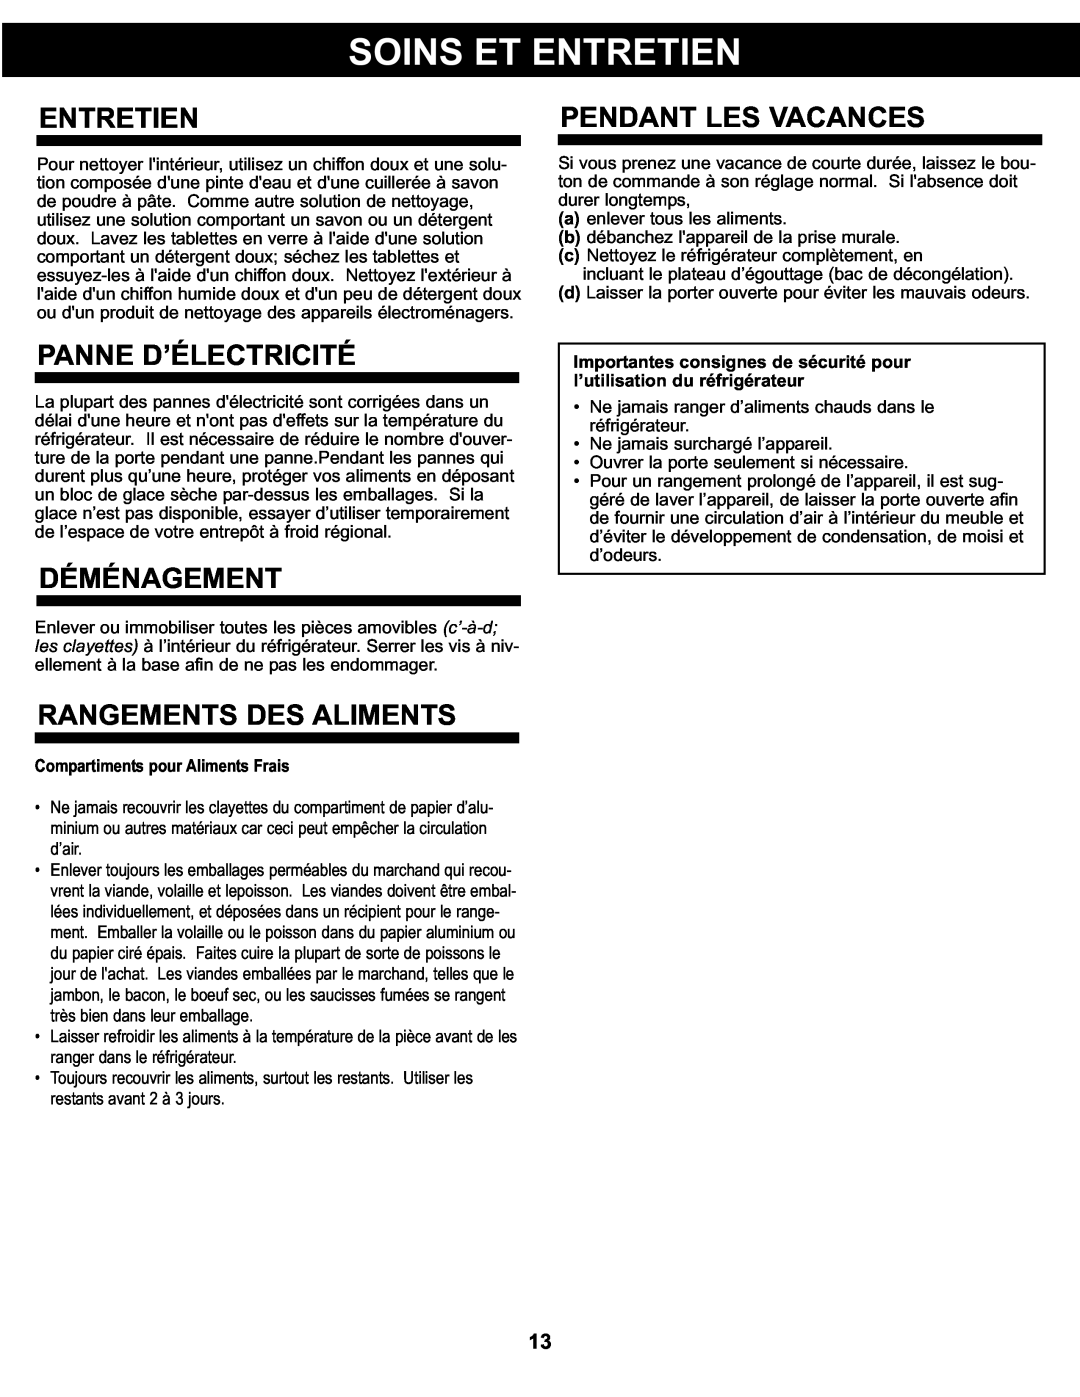 Danby DCR122BSLDD manual Entretien, Panne D’Électricité, Déménagement, Rangements Des Aliments, Pendant Les Vacances 